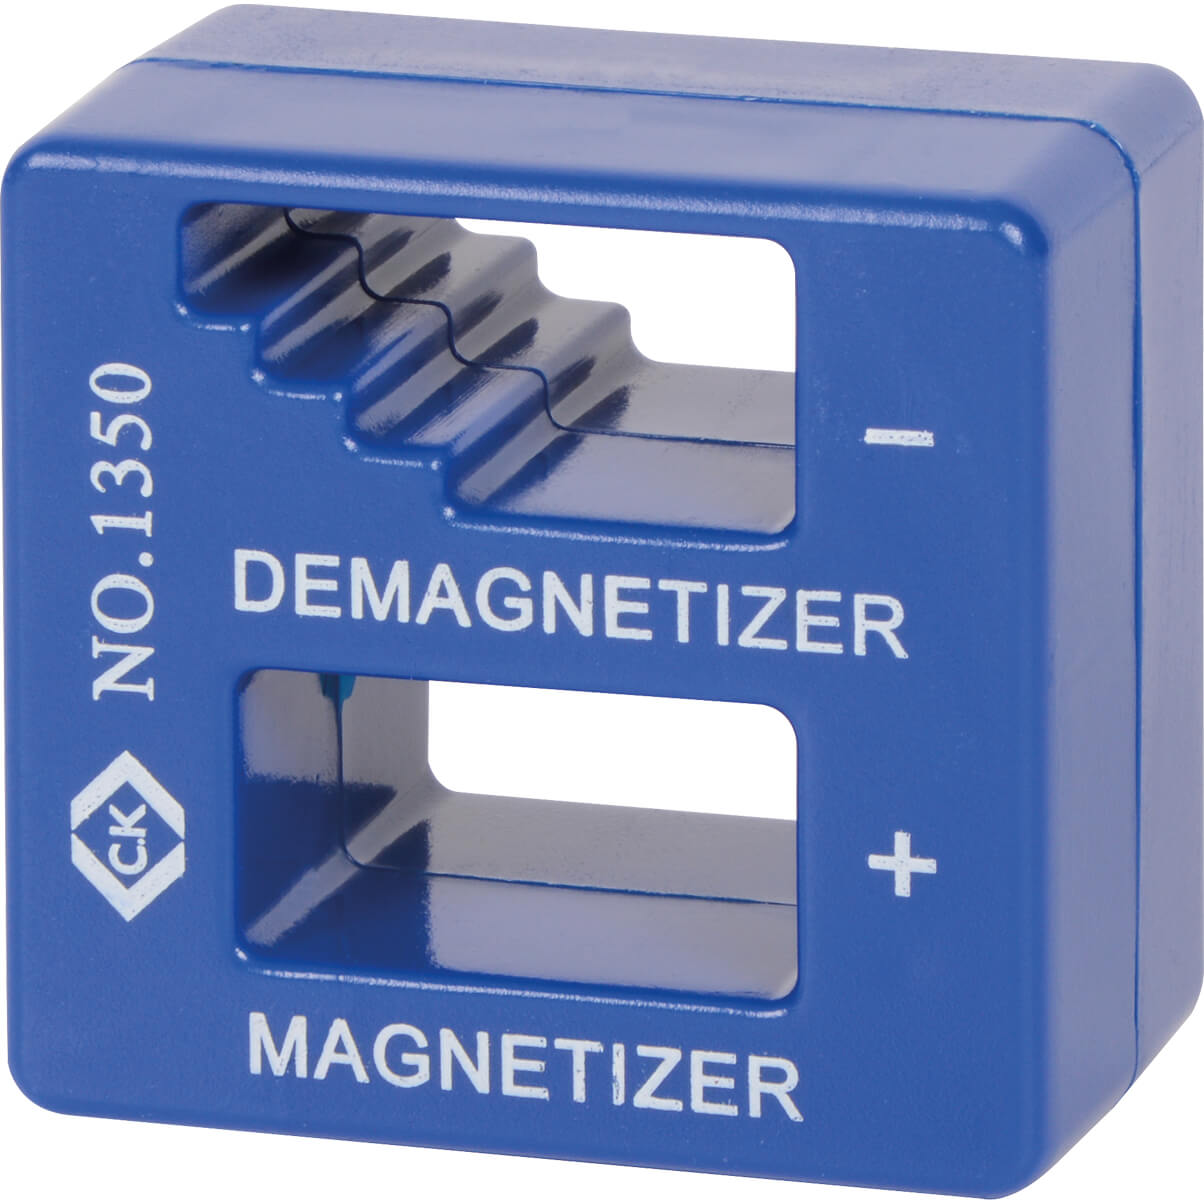 Image of CK Magnetiser and Demagnetiser